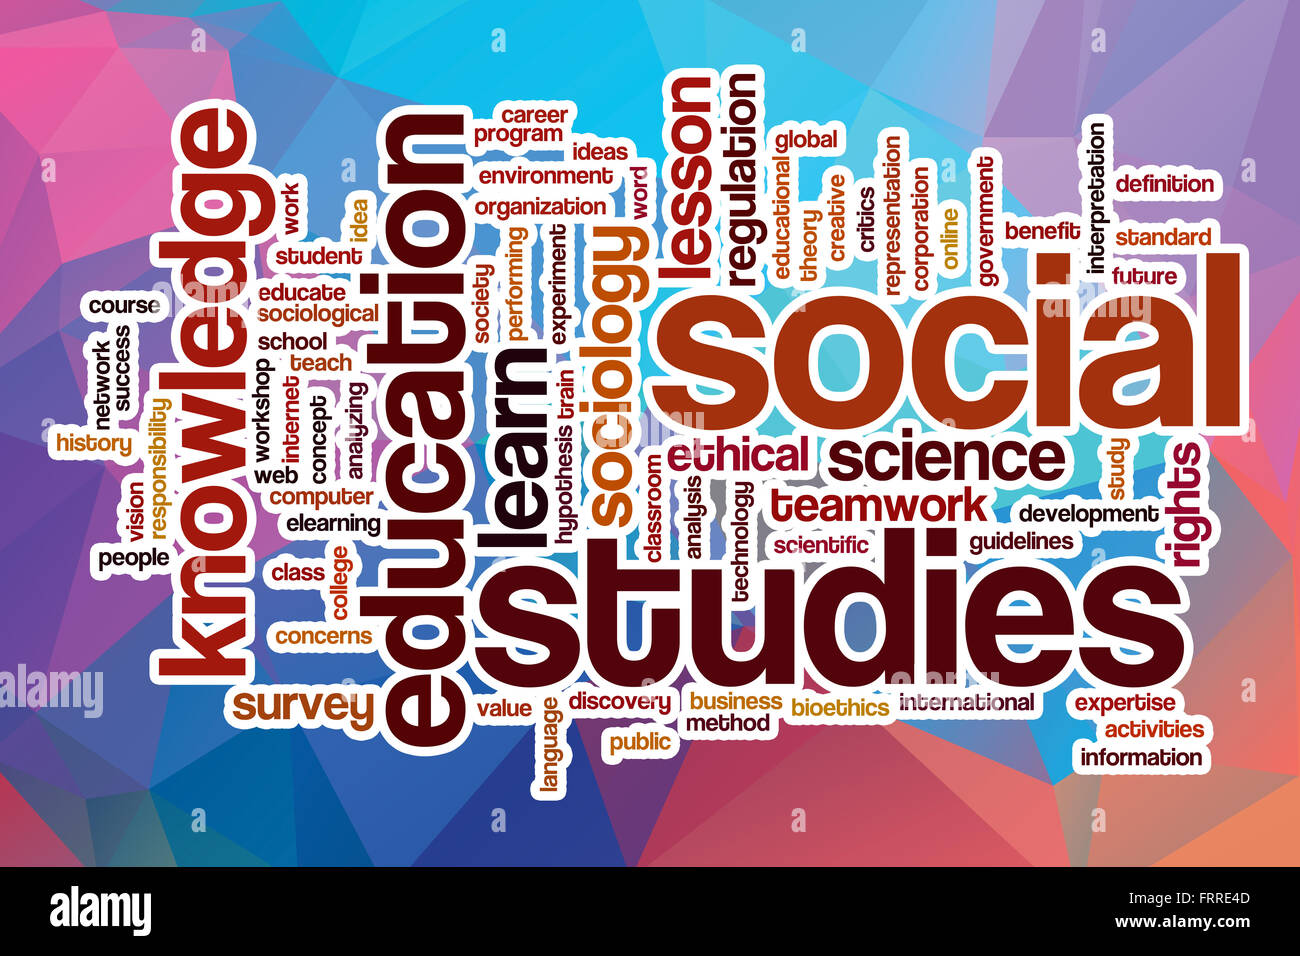 social studies wallpaper